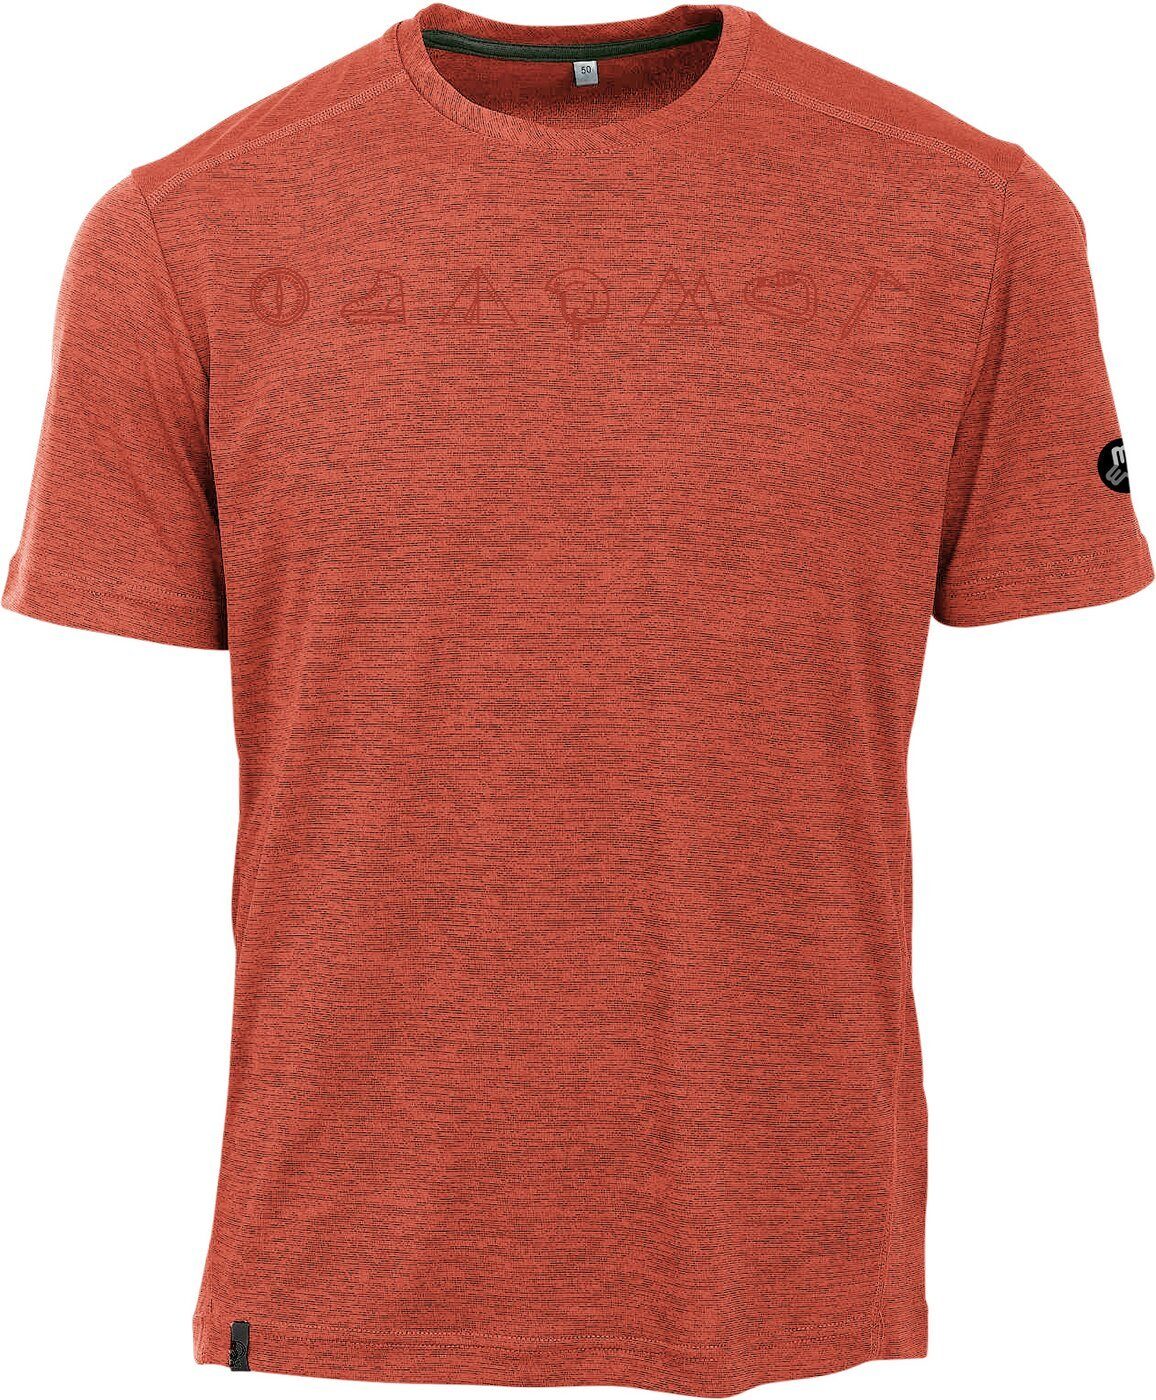 Maul Kurzarmshirt Grinberg 46 fresh-1/2 orange T-Shirt+Pri